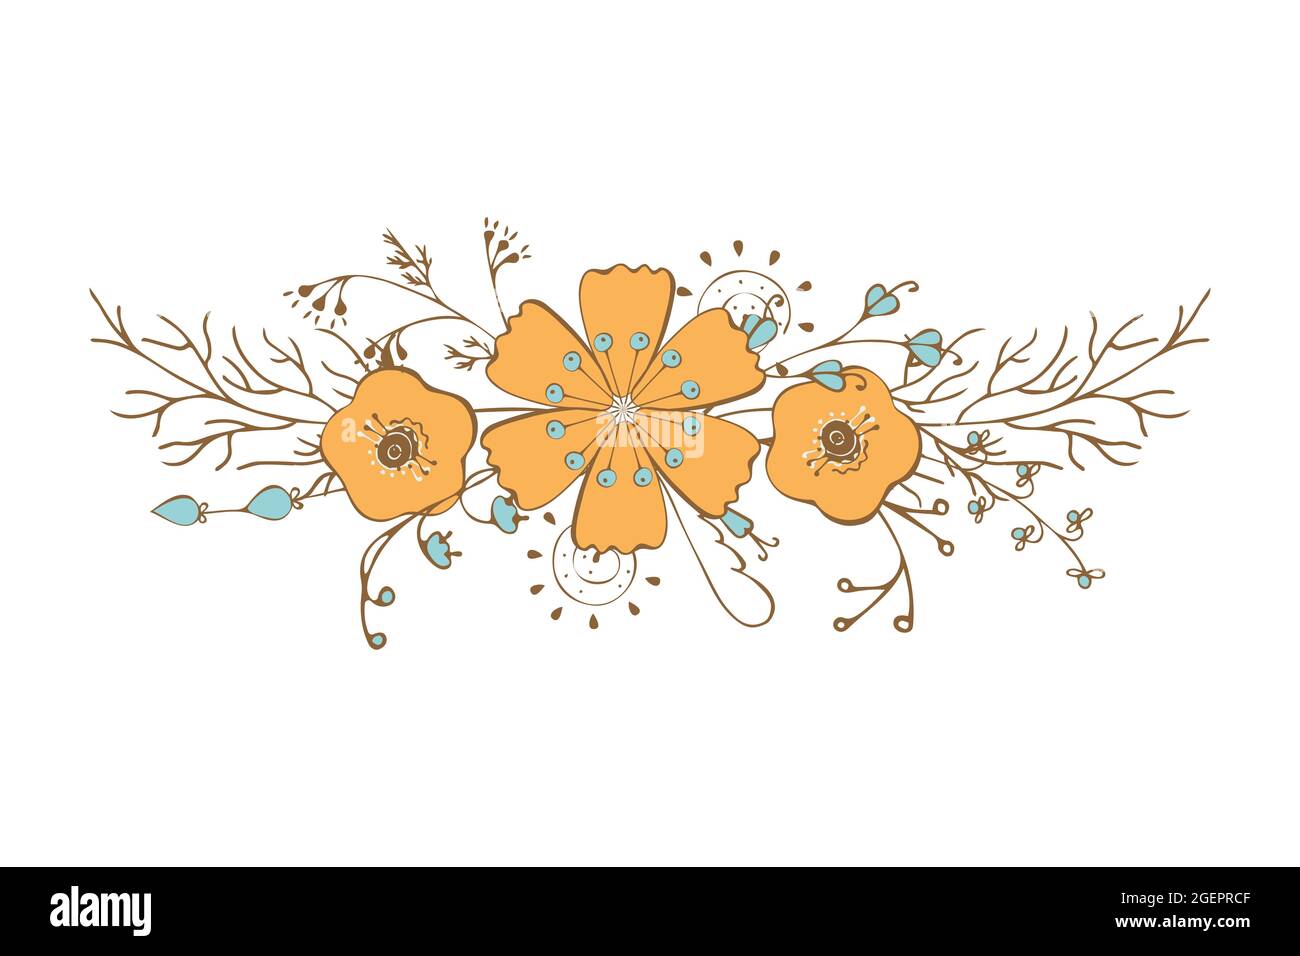 Ornamento autunno zen arte bello delicato doodling fiori foglie ramoscelli disegno a mano, isolato, sfondo bianco, elemento per il tuo design, per biglietti d'auguri vacanza. Illustrazione vettoriale Illustrazione Vettoriale